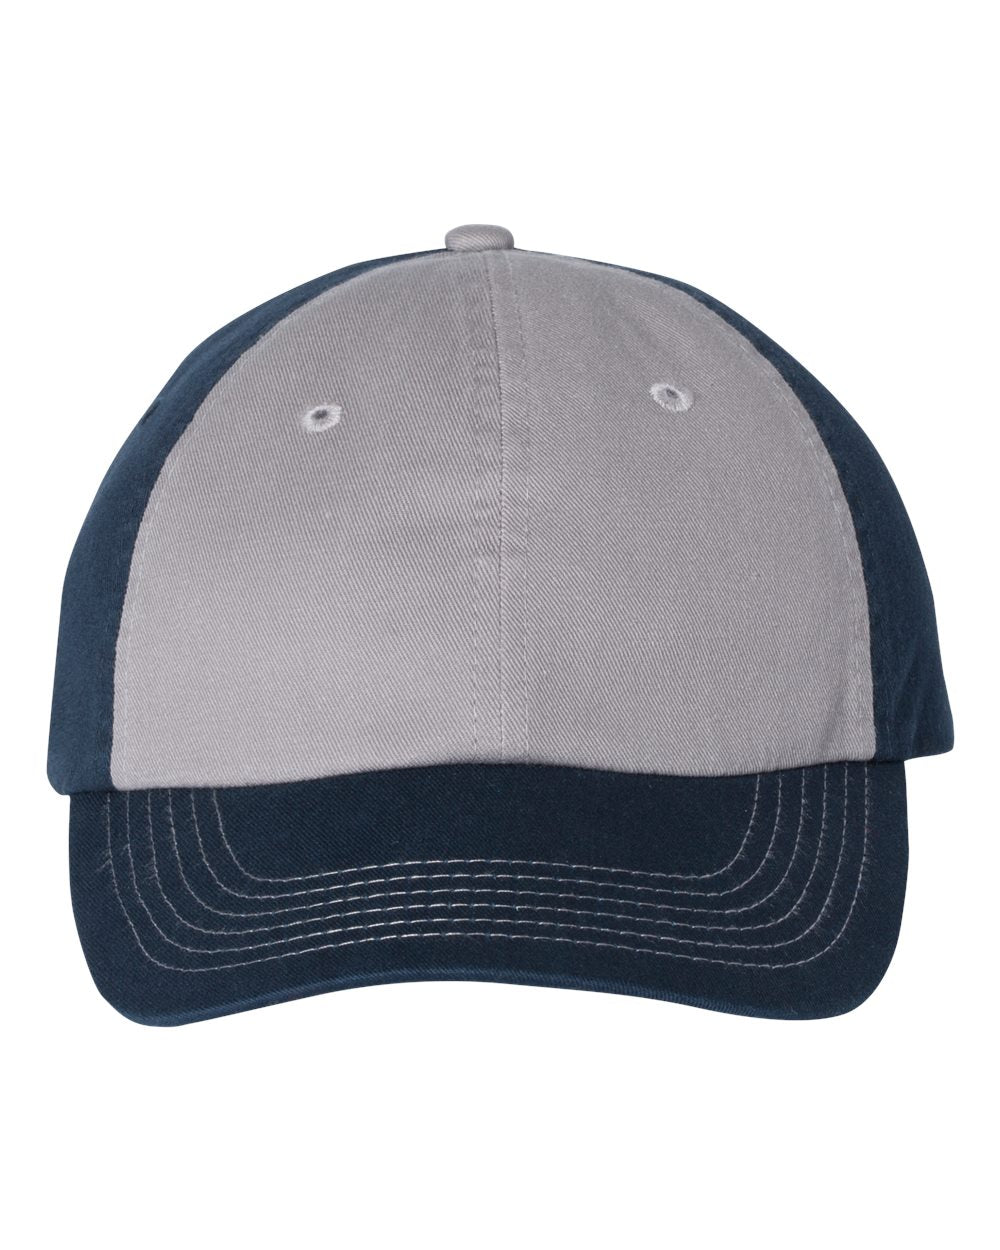 Valucap - Classic Dad Hat